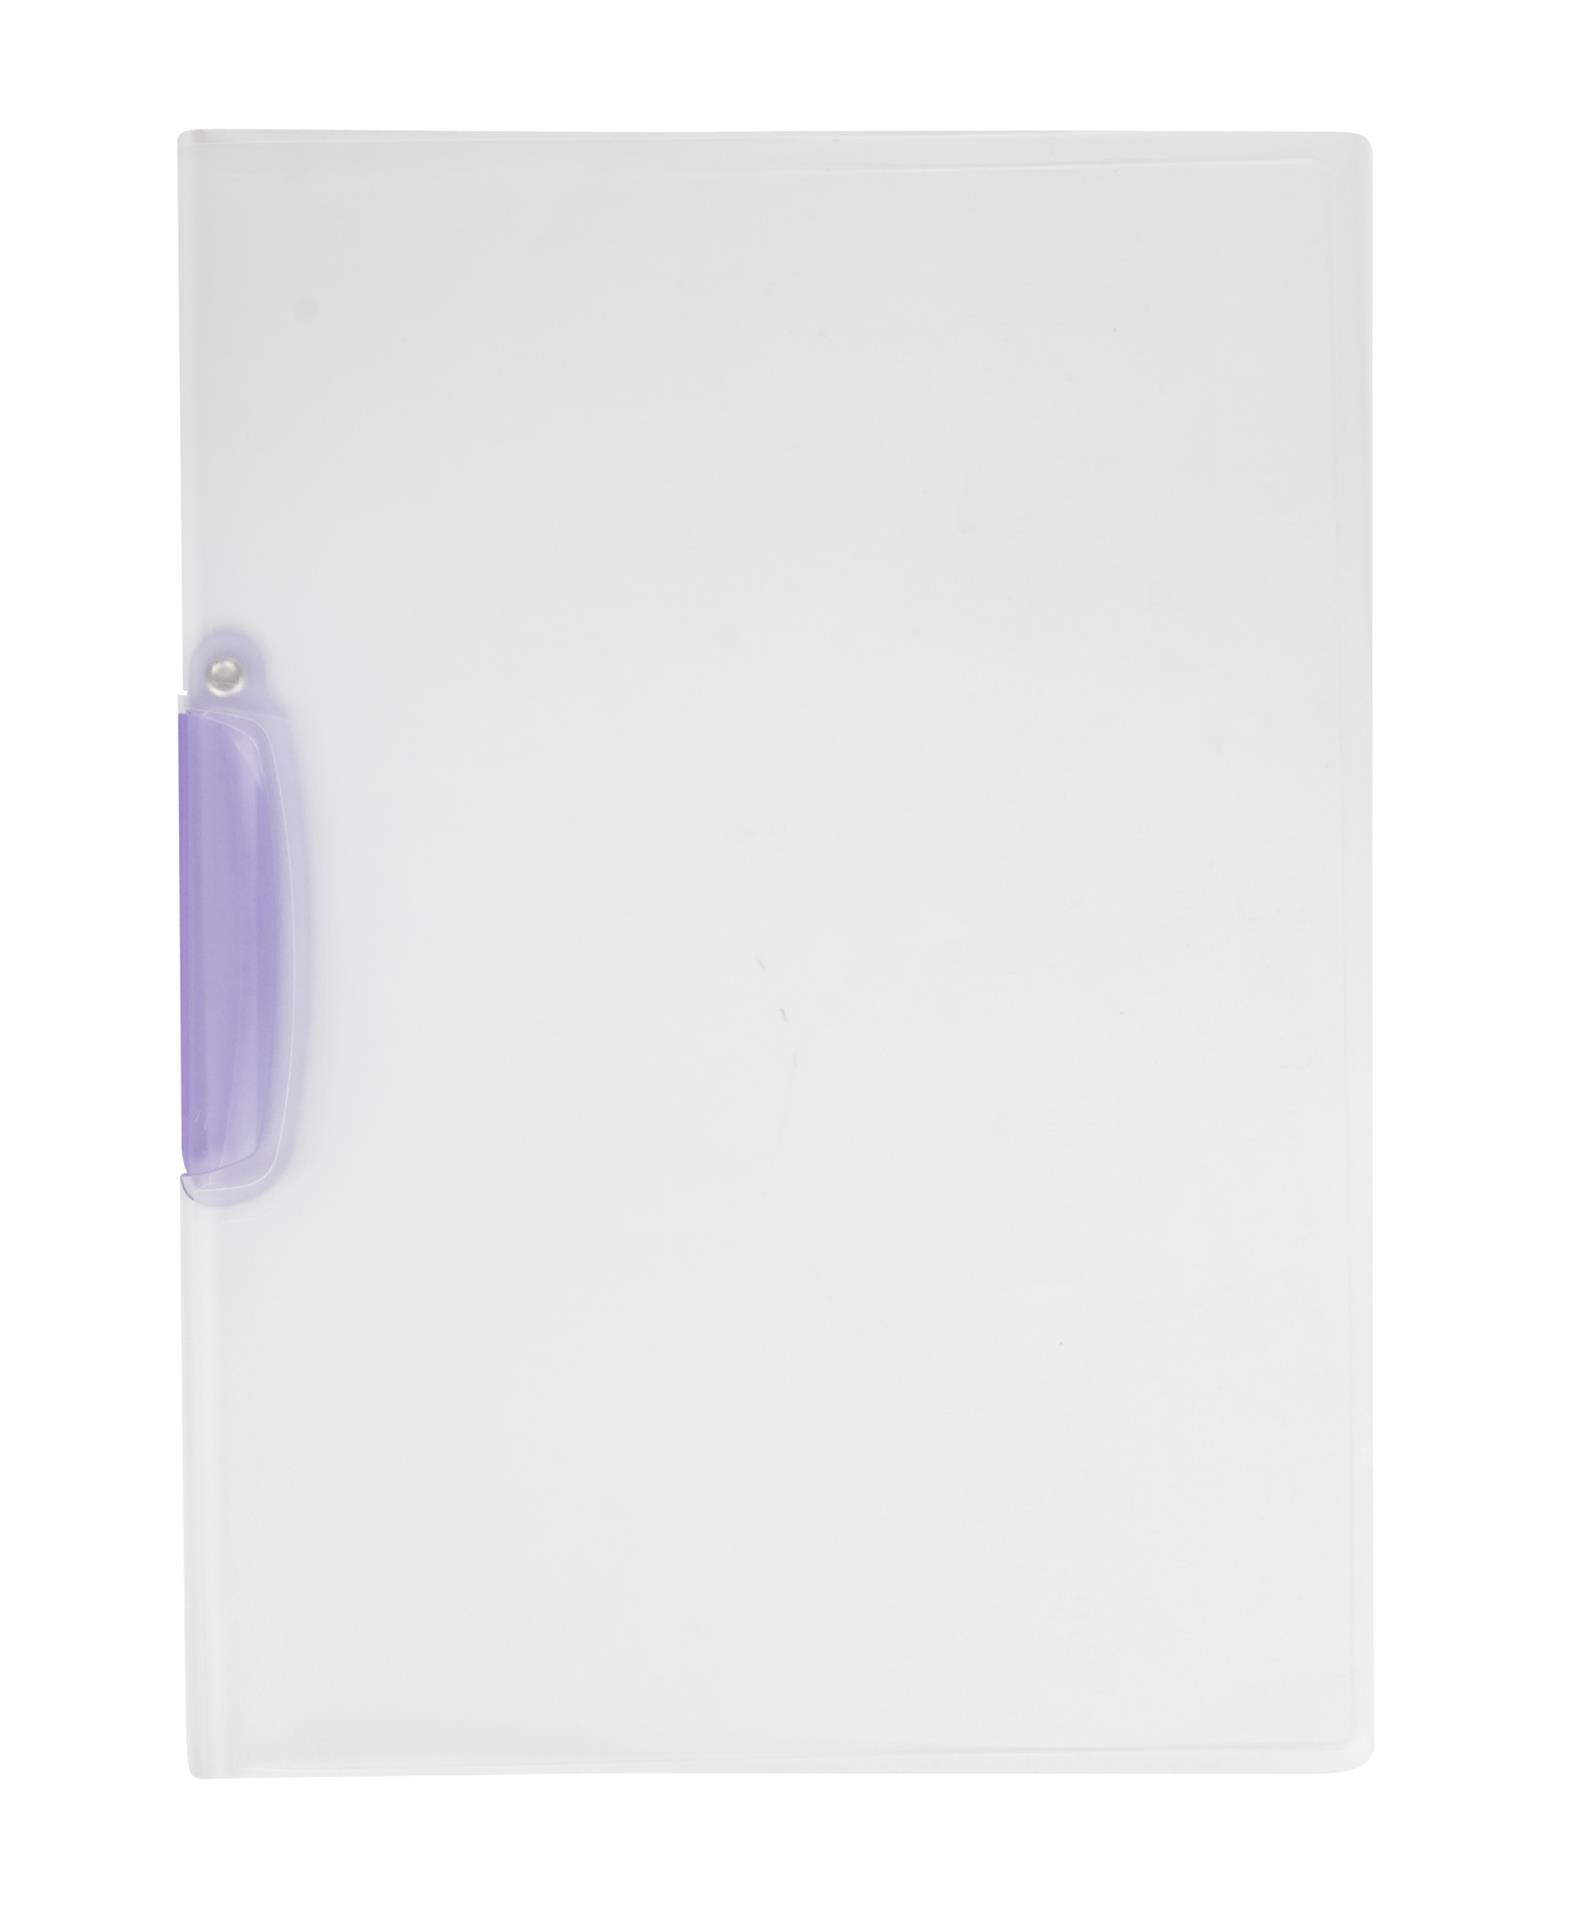 Zakládací desky s výklopným klipem Q-Connect - A4, kapacita 30 listů, fialová spona, 1 ks